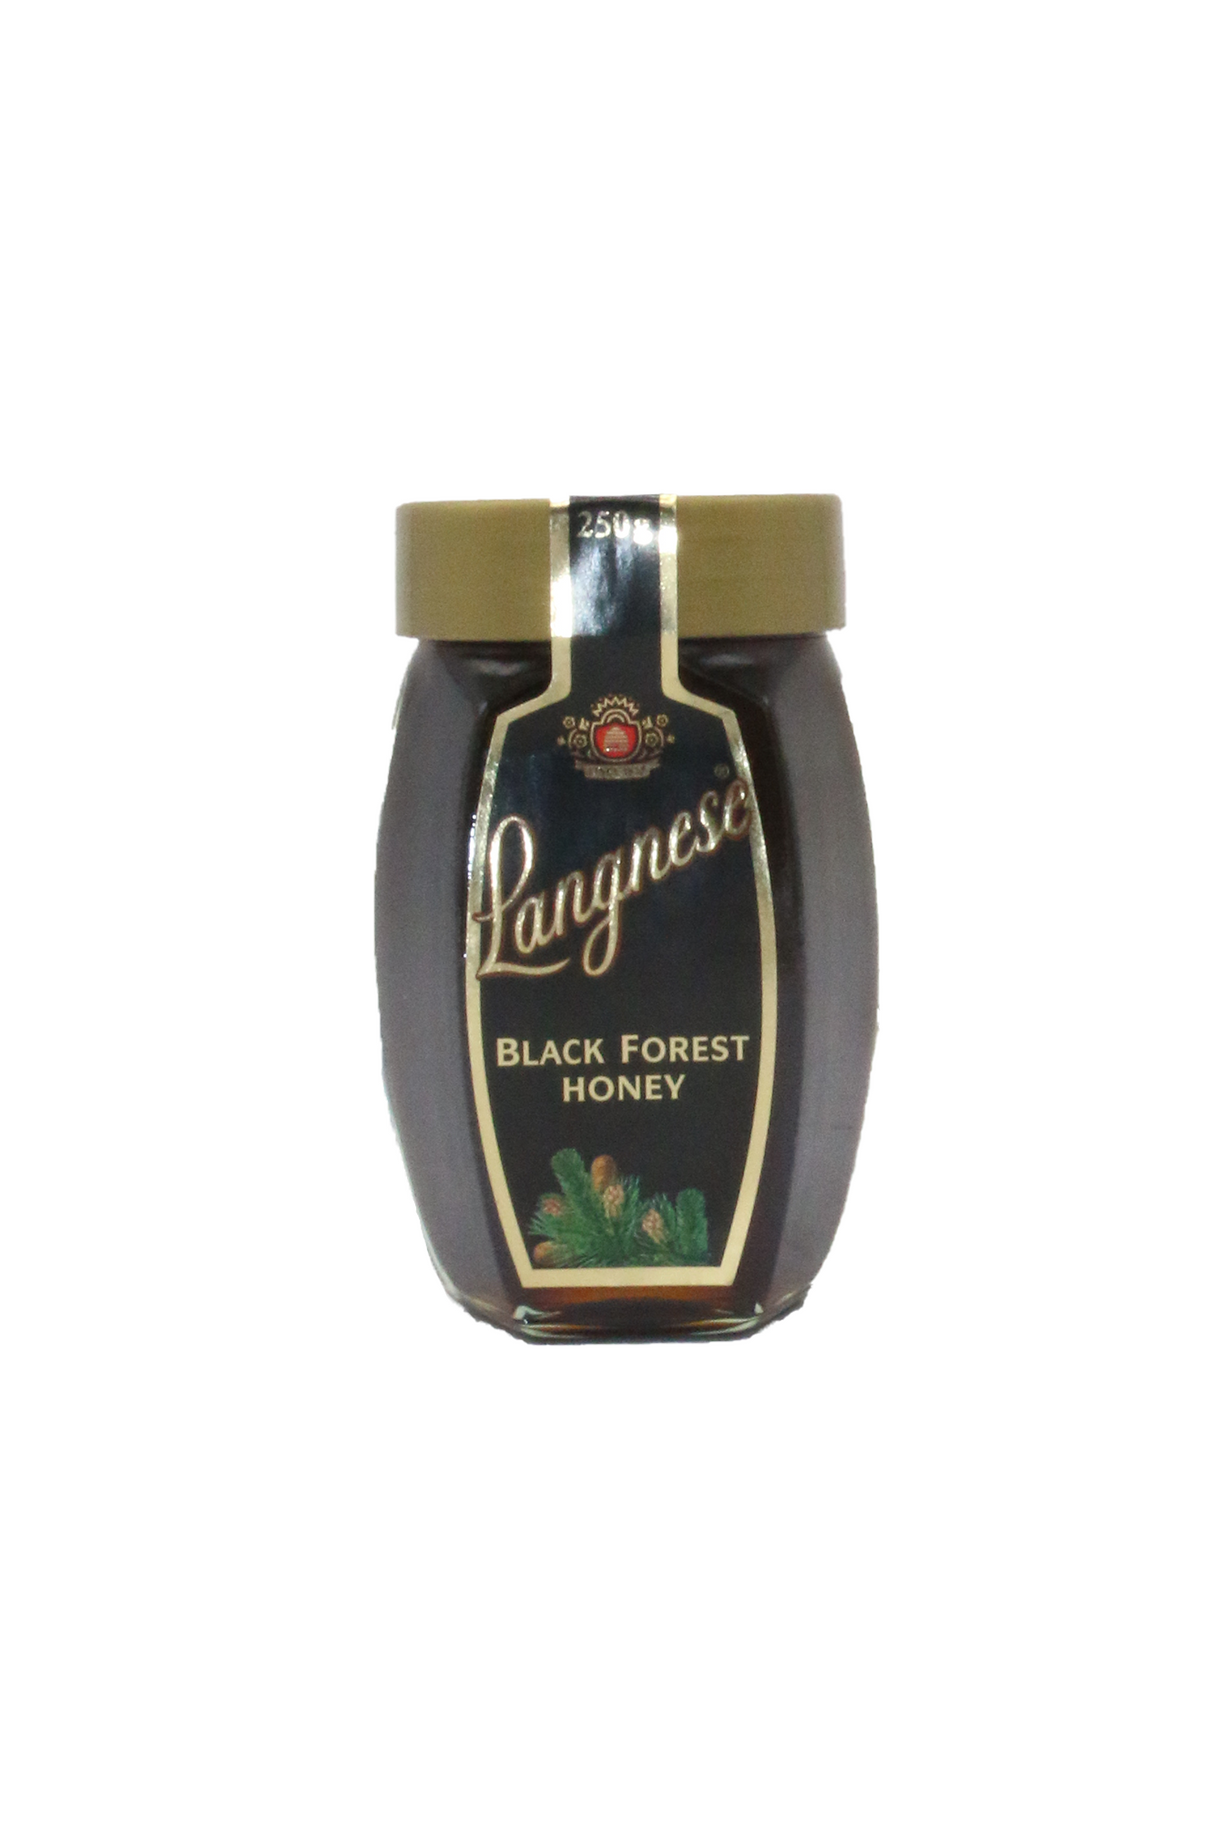 langnese honey black forest 250g